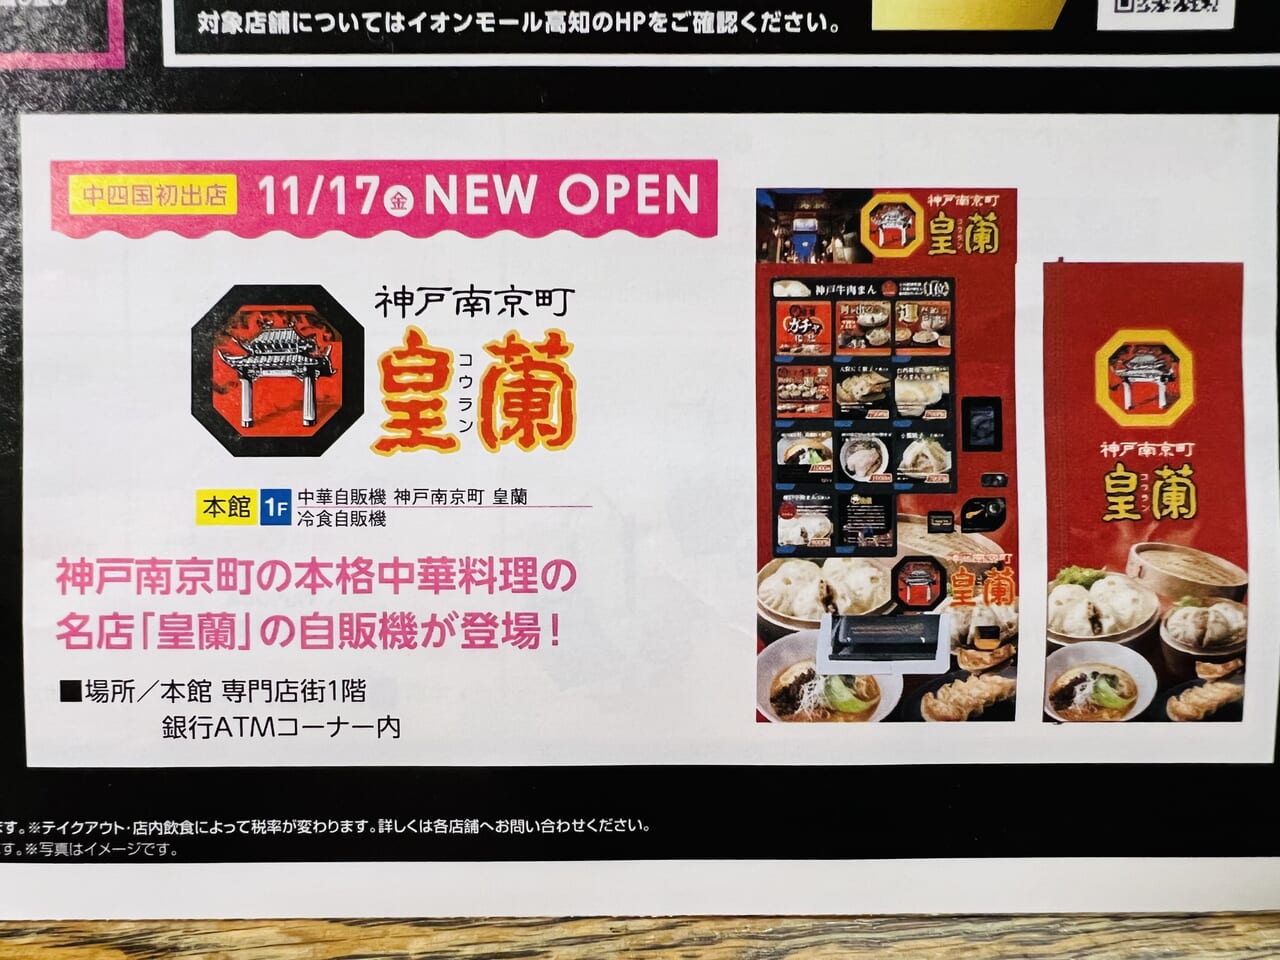 「イオンモール高知」のATMコーナーに設置された「神戸南京町 皇蘭」の自動販売機オープンのお知らせ